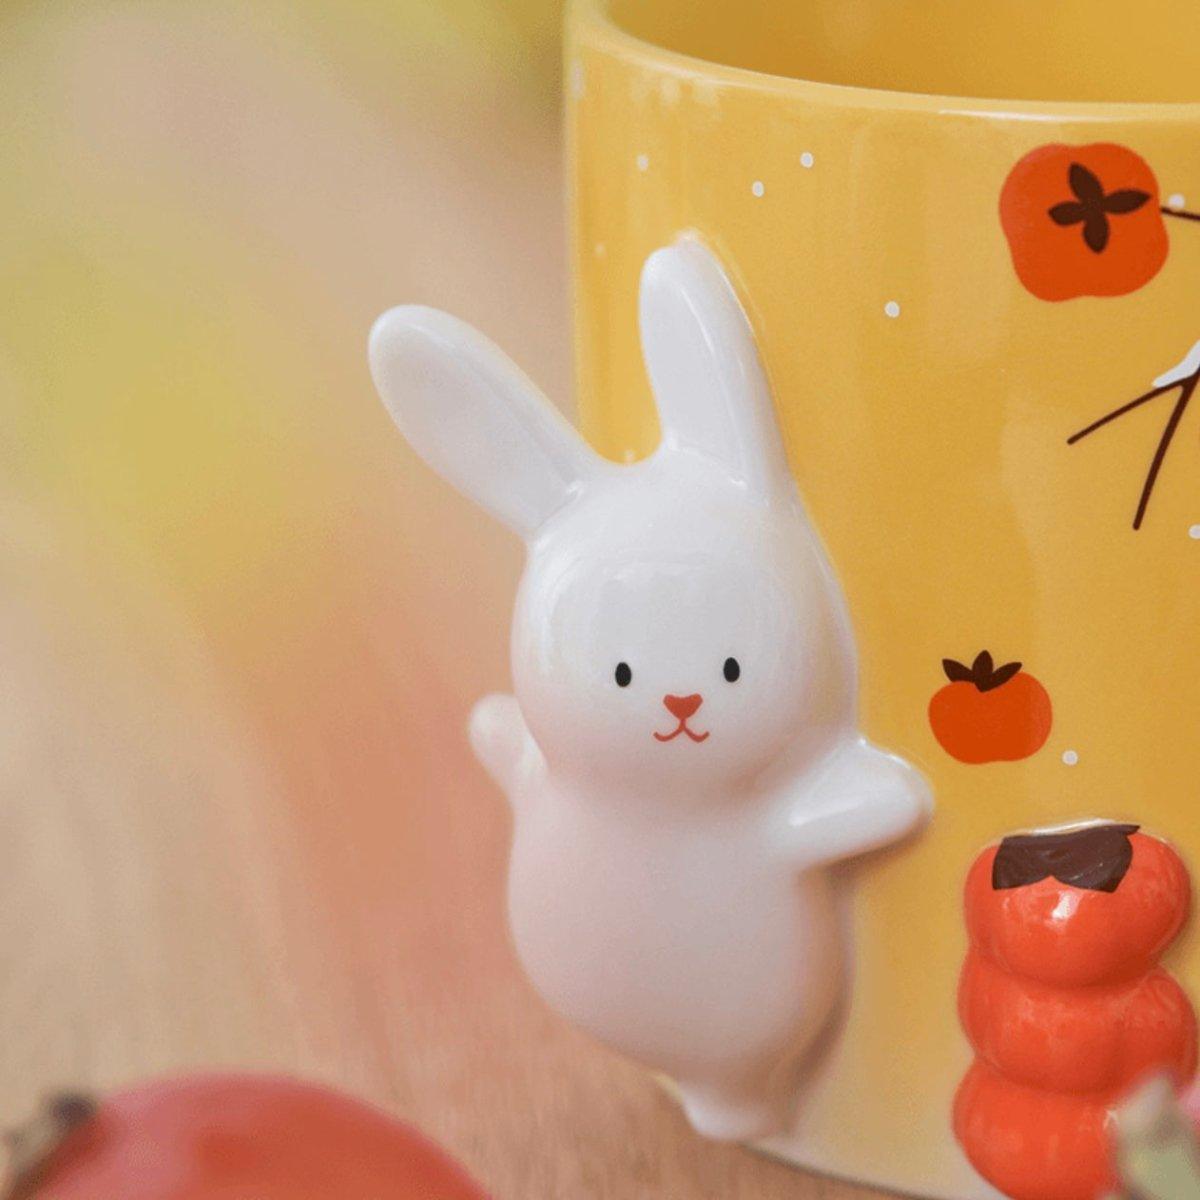 Starbucks 473ml/16oz Chinese New Year Crafted Winter Rabbit Ceramic Mug - Ann Ann Starbucks